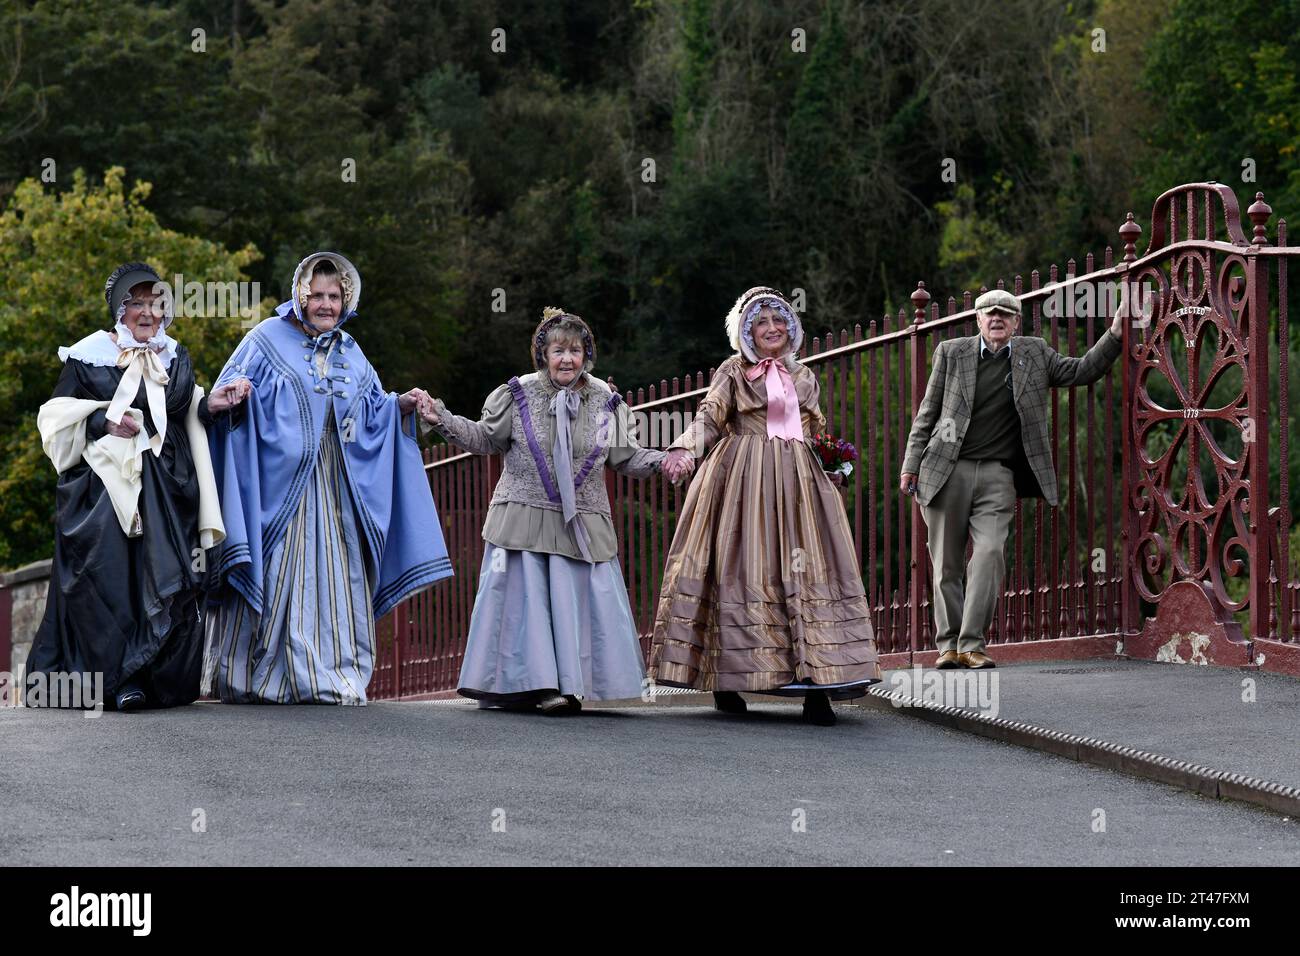 Les dames en costumes d'époque victorienne à Ironbridge, Shropshire, un site du patrimoine mondial de l'UNESCO, Angleterre, Royaume-Uni. Campagne pour la restauration des fontaines . Banque D'Images